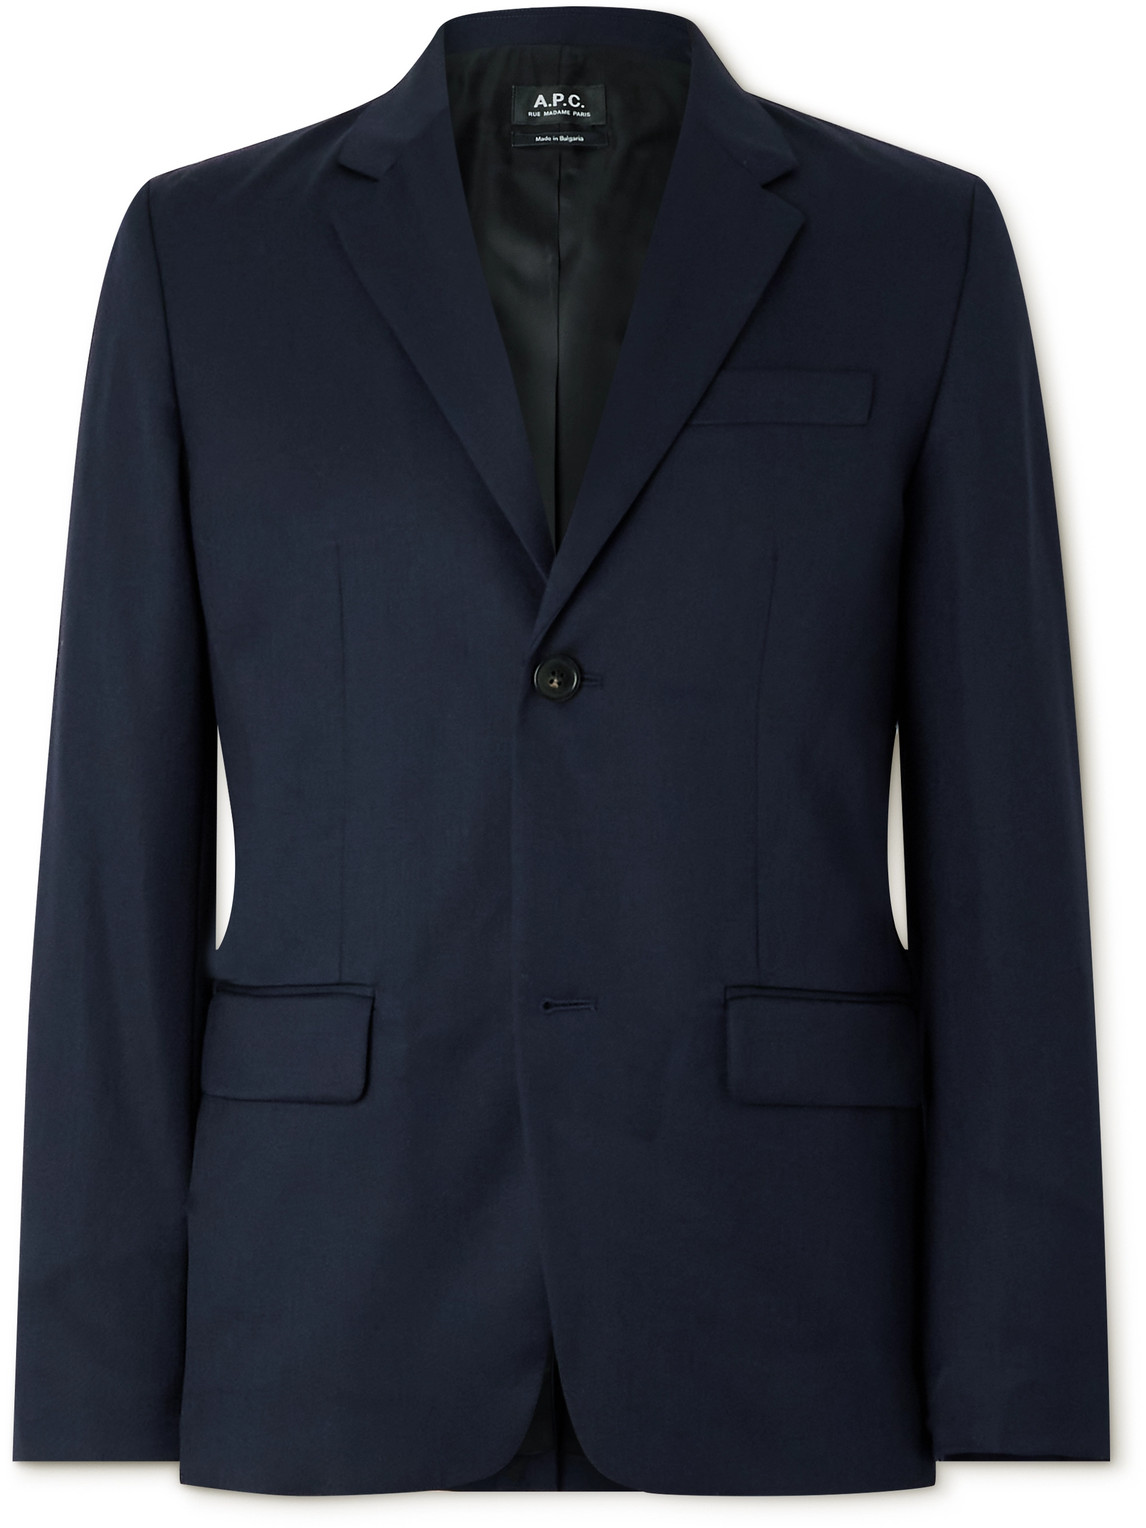 Harry Wool Suit Jacket